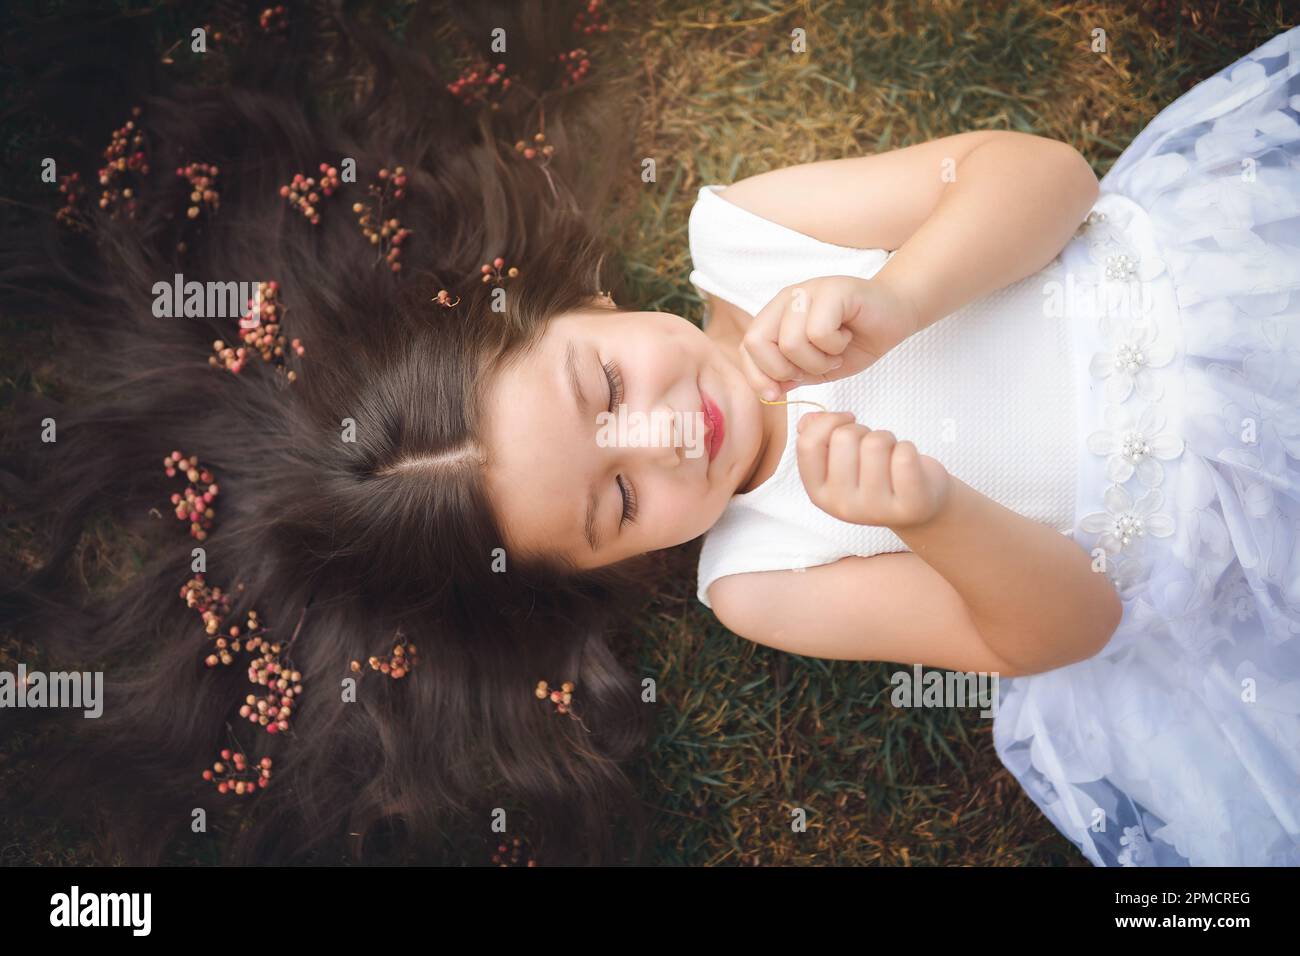 Niña en vestido blanco acostado en la hierba, ella está sonriendo, su cabello es muy largo y como una princesa, ella juega con sus manos en el tema del niño Foto de stock